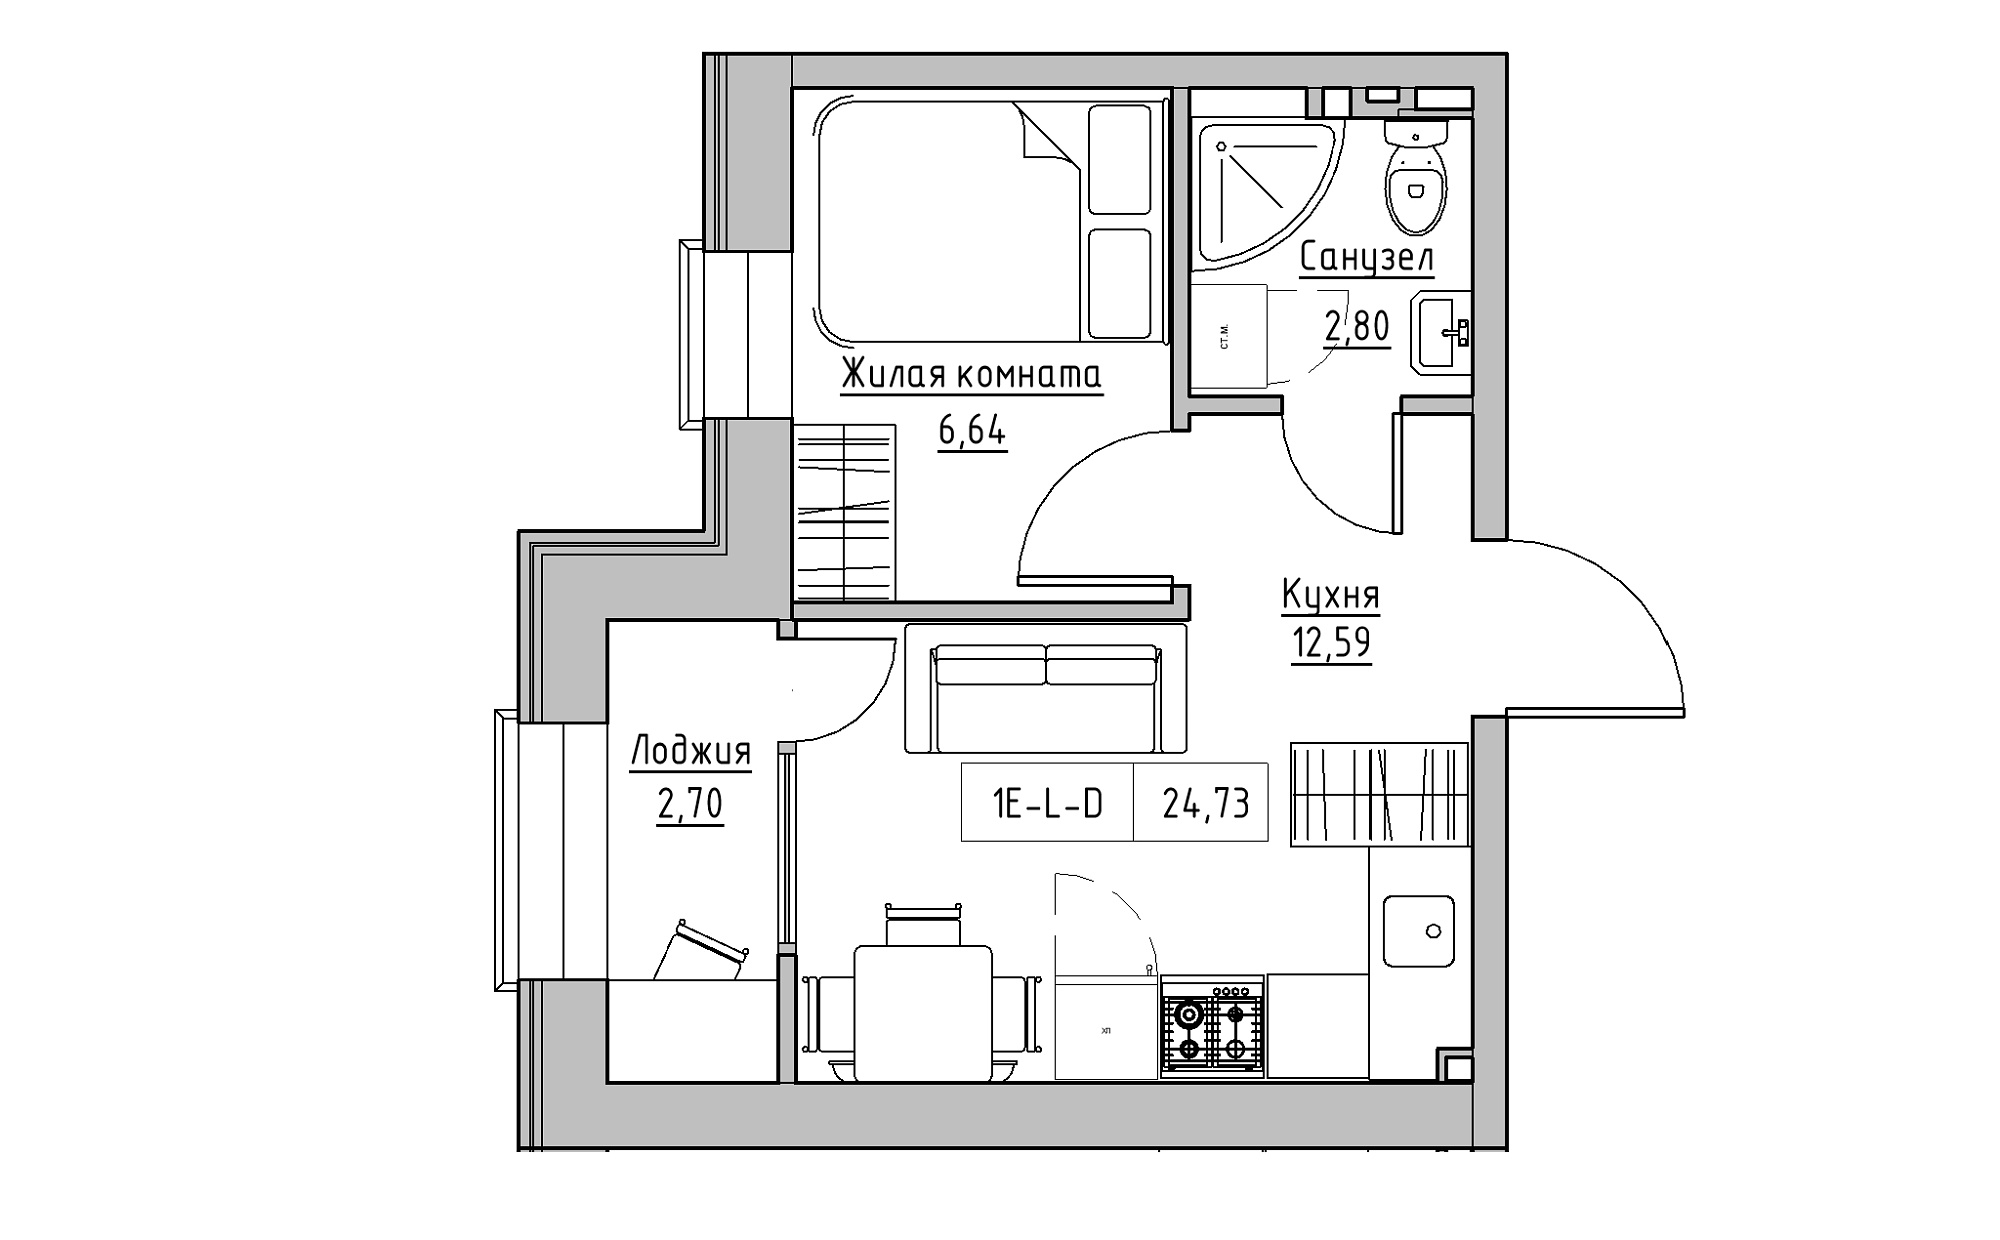 Планування 1-к квартира площею 24.73м2, KS-022-05/0016.